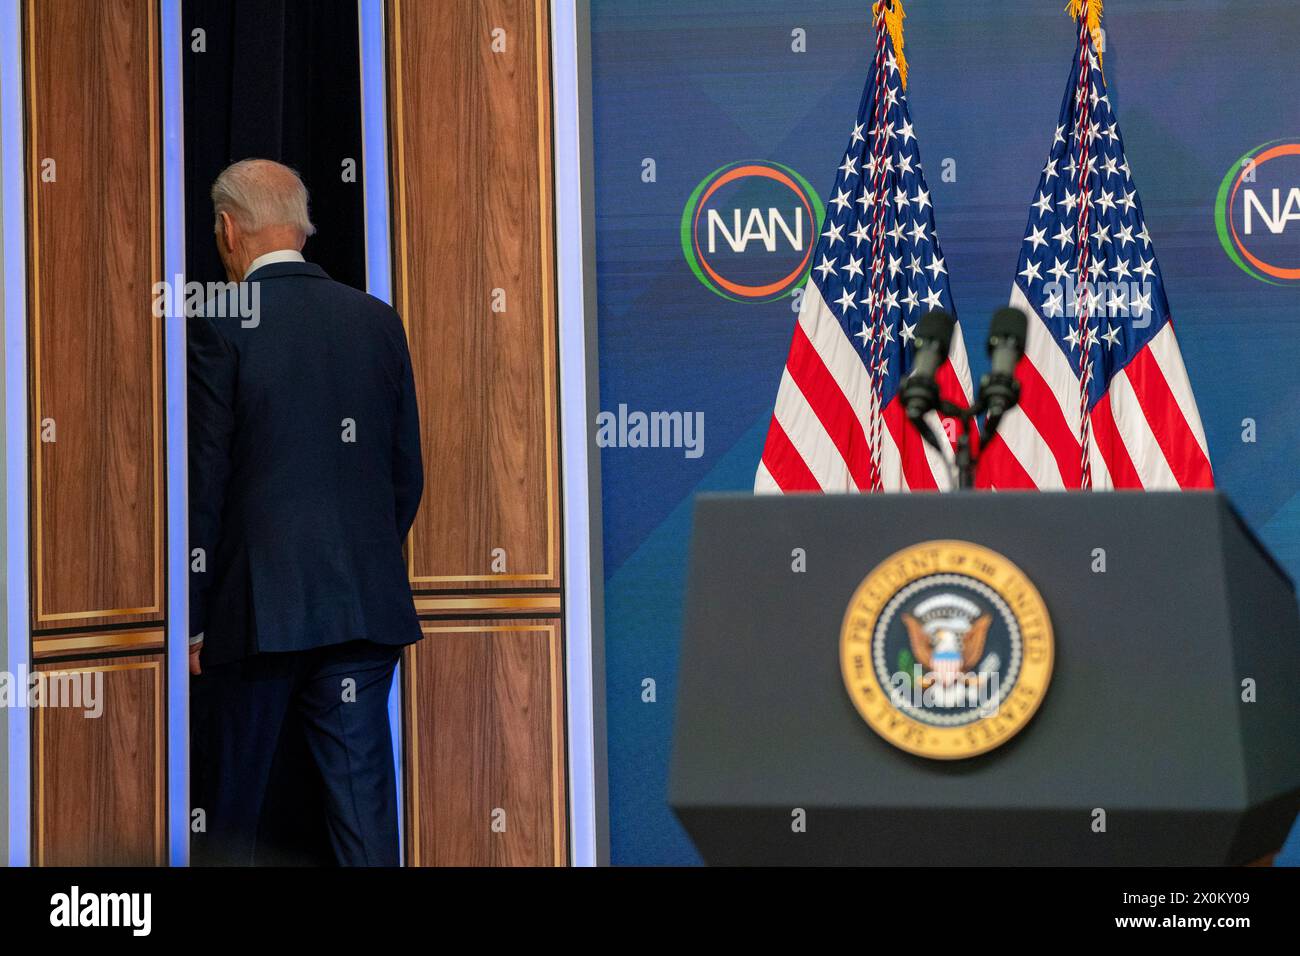 Le président américain Joe Biden prononce un discours virtuel lors de la Convention du National action Network à l'Auditorium South court de la Maison Blanche le 12 avril 2024. Crédit : Ken Cedeno / piscine via CNP Banque D'Images